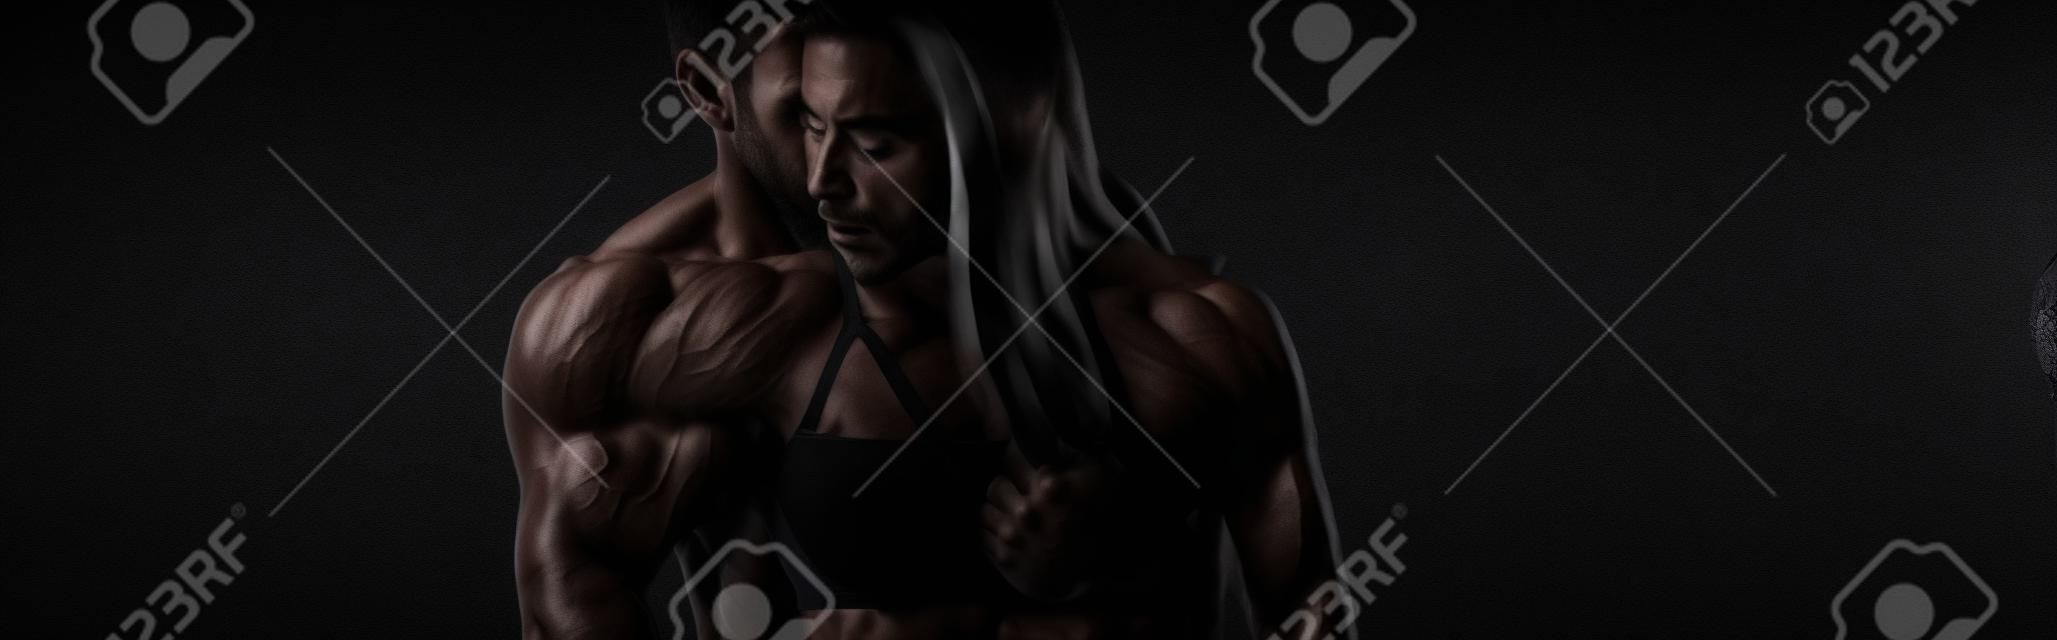 Panoramaaufnahme eines muskulösen Mannes in der Nähe einer Frau in Spitzenunterwäsche isoliert auf Schwarz